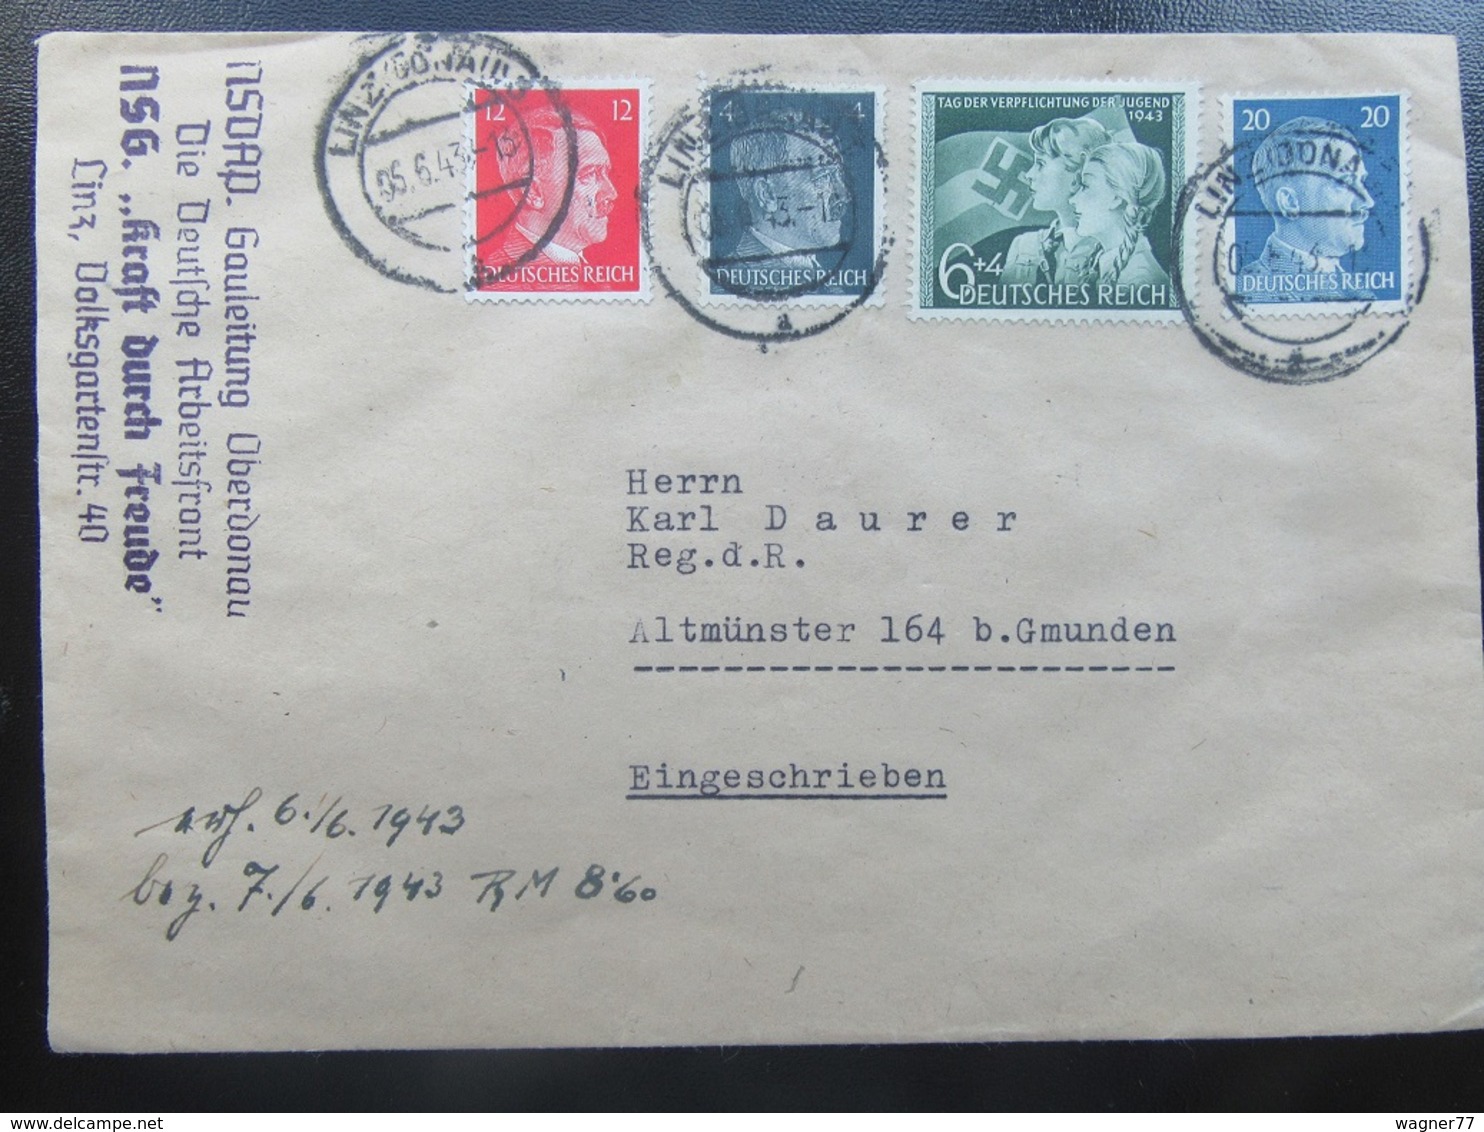 Brief Letter - Sondermarke HJ - Hitler - 1943 - NSDAP / DAF / KdF - Covers & Documents